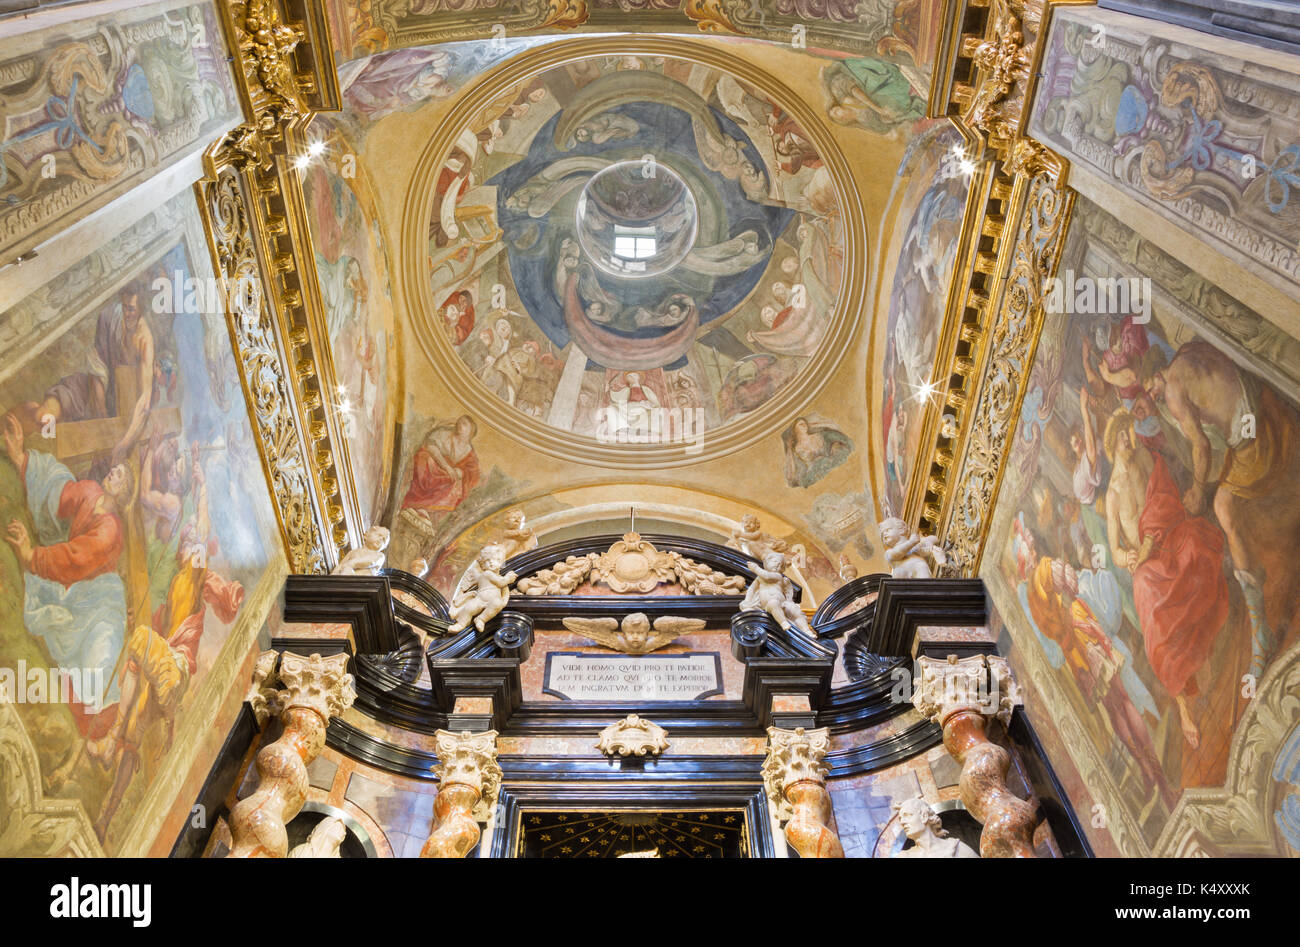 Torino, Italia - 13 marzo 2017: gli affreschi della cappella di Santa Croce nella chiesa di santa teresa da g. Paolo Recchi (17 cent.). Foto Stock